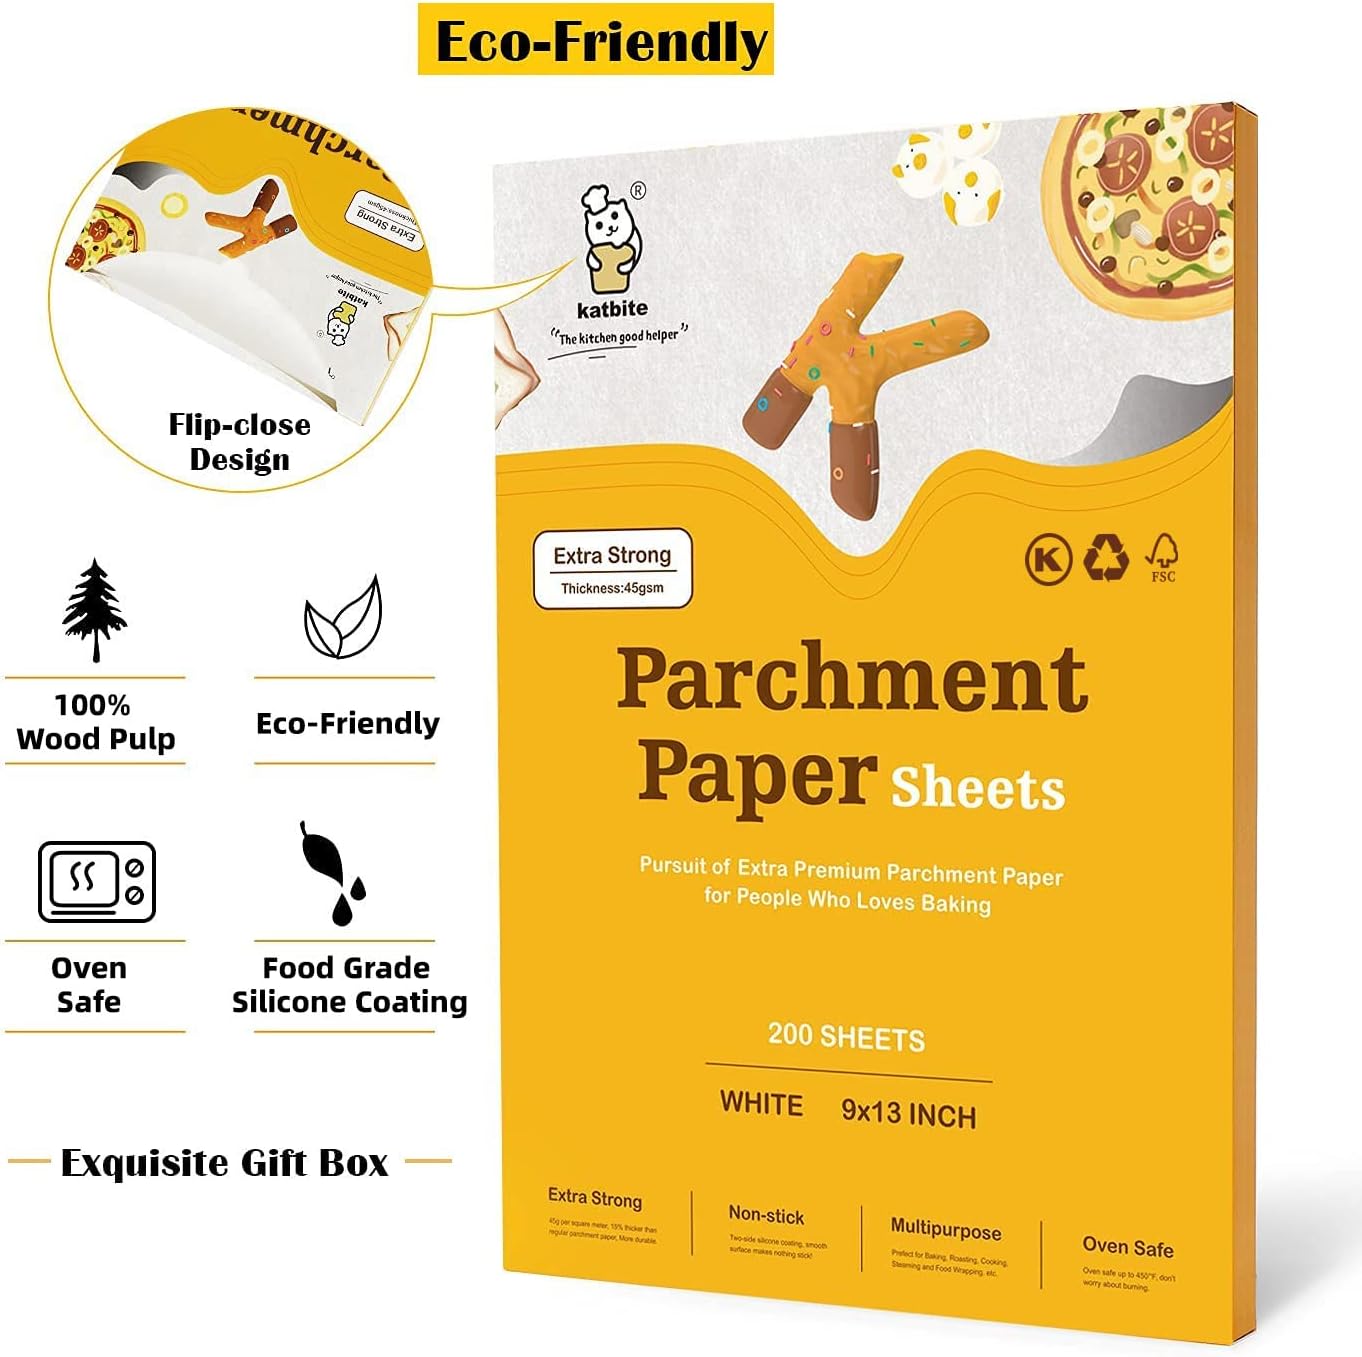 katbite 200Pcs 9x13 inch Heavy Duty Parchment Paper Sheets